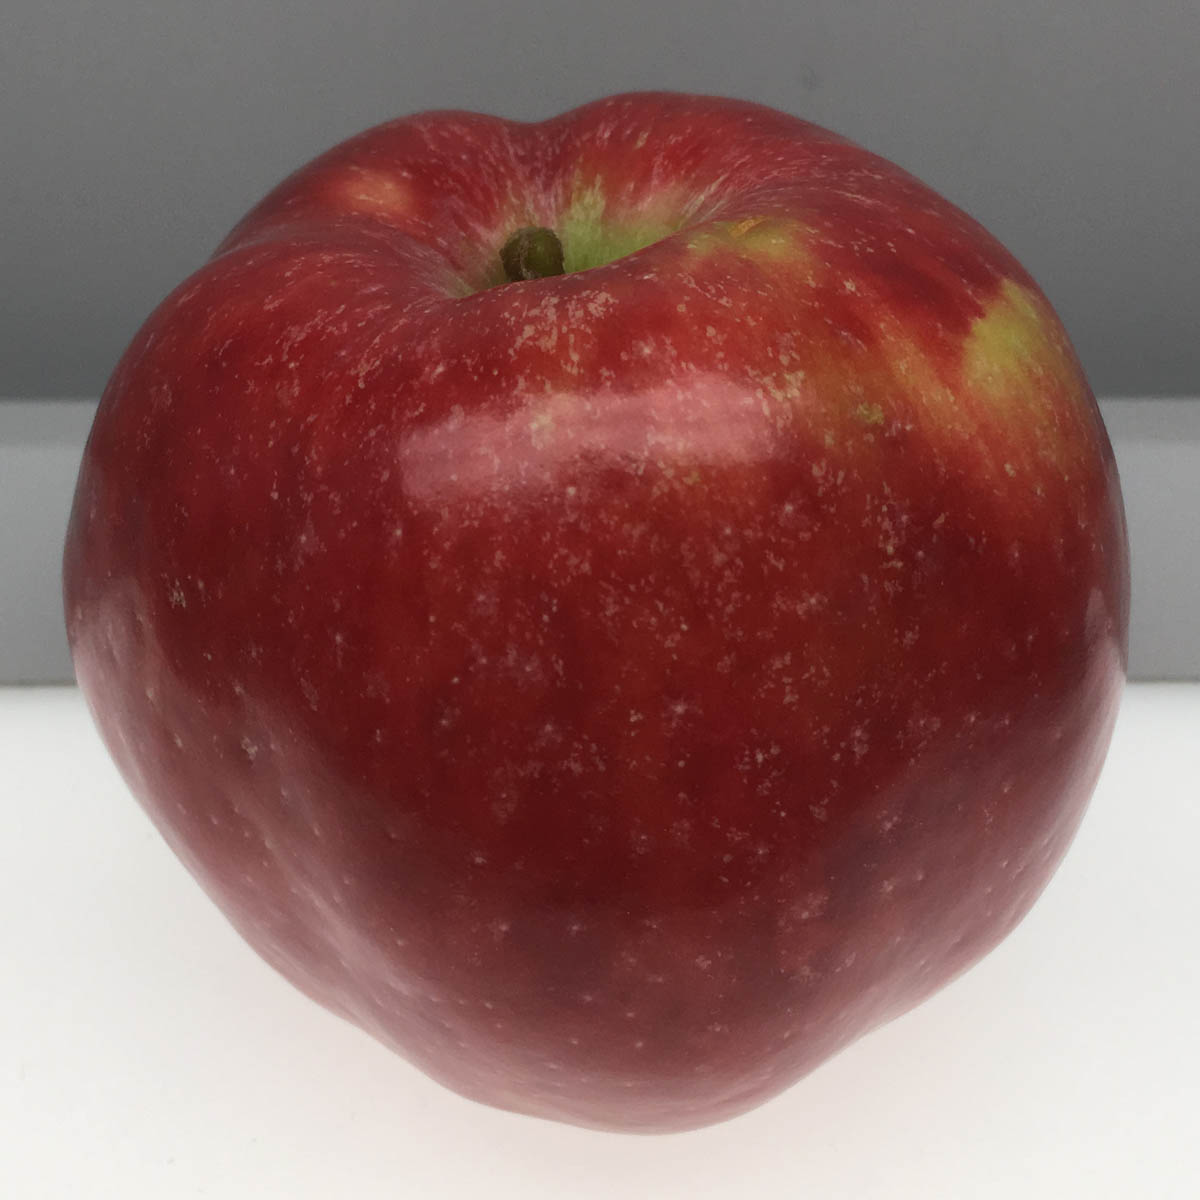 Red Gravenstein apple